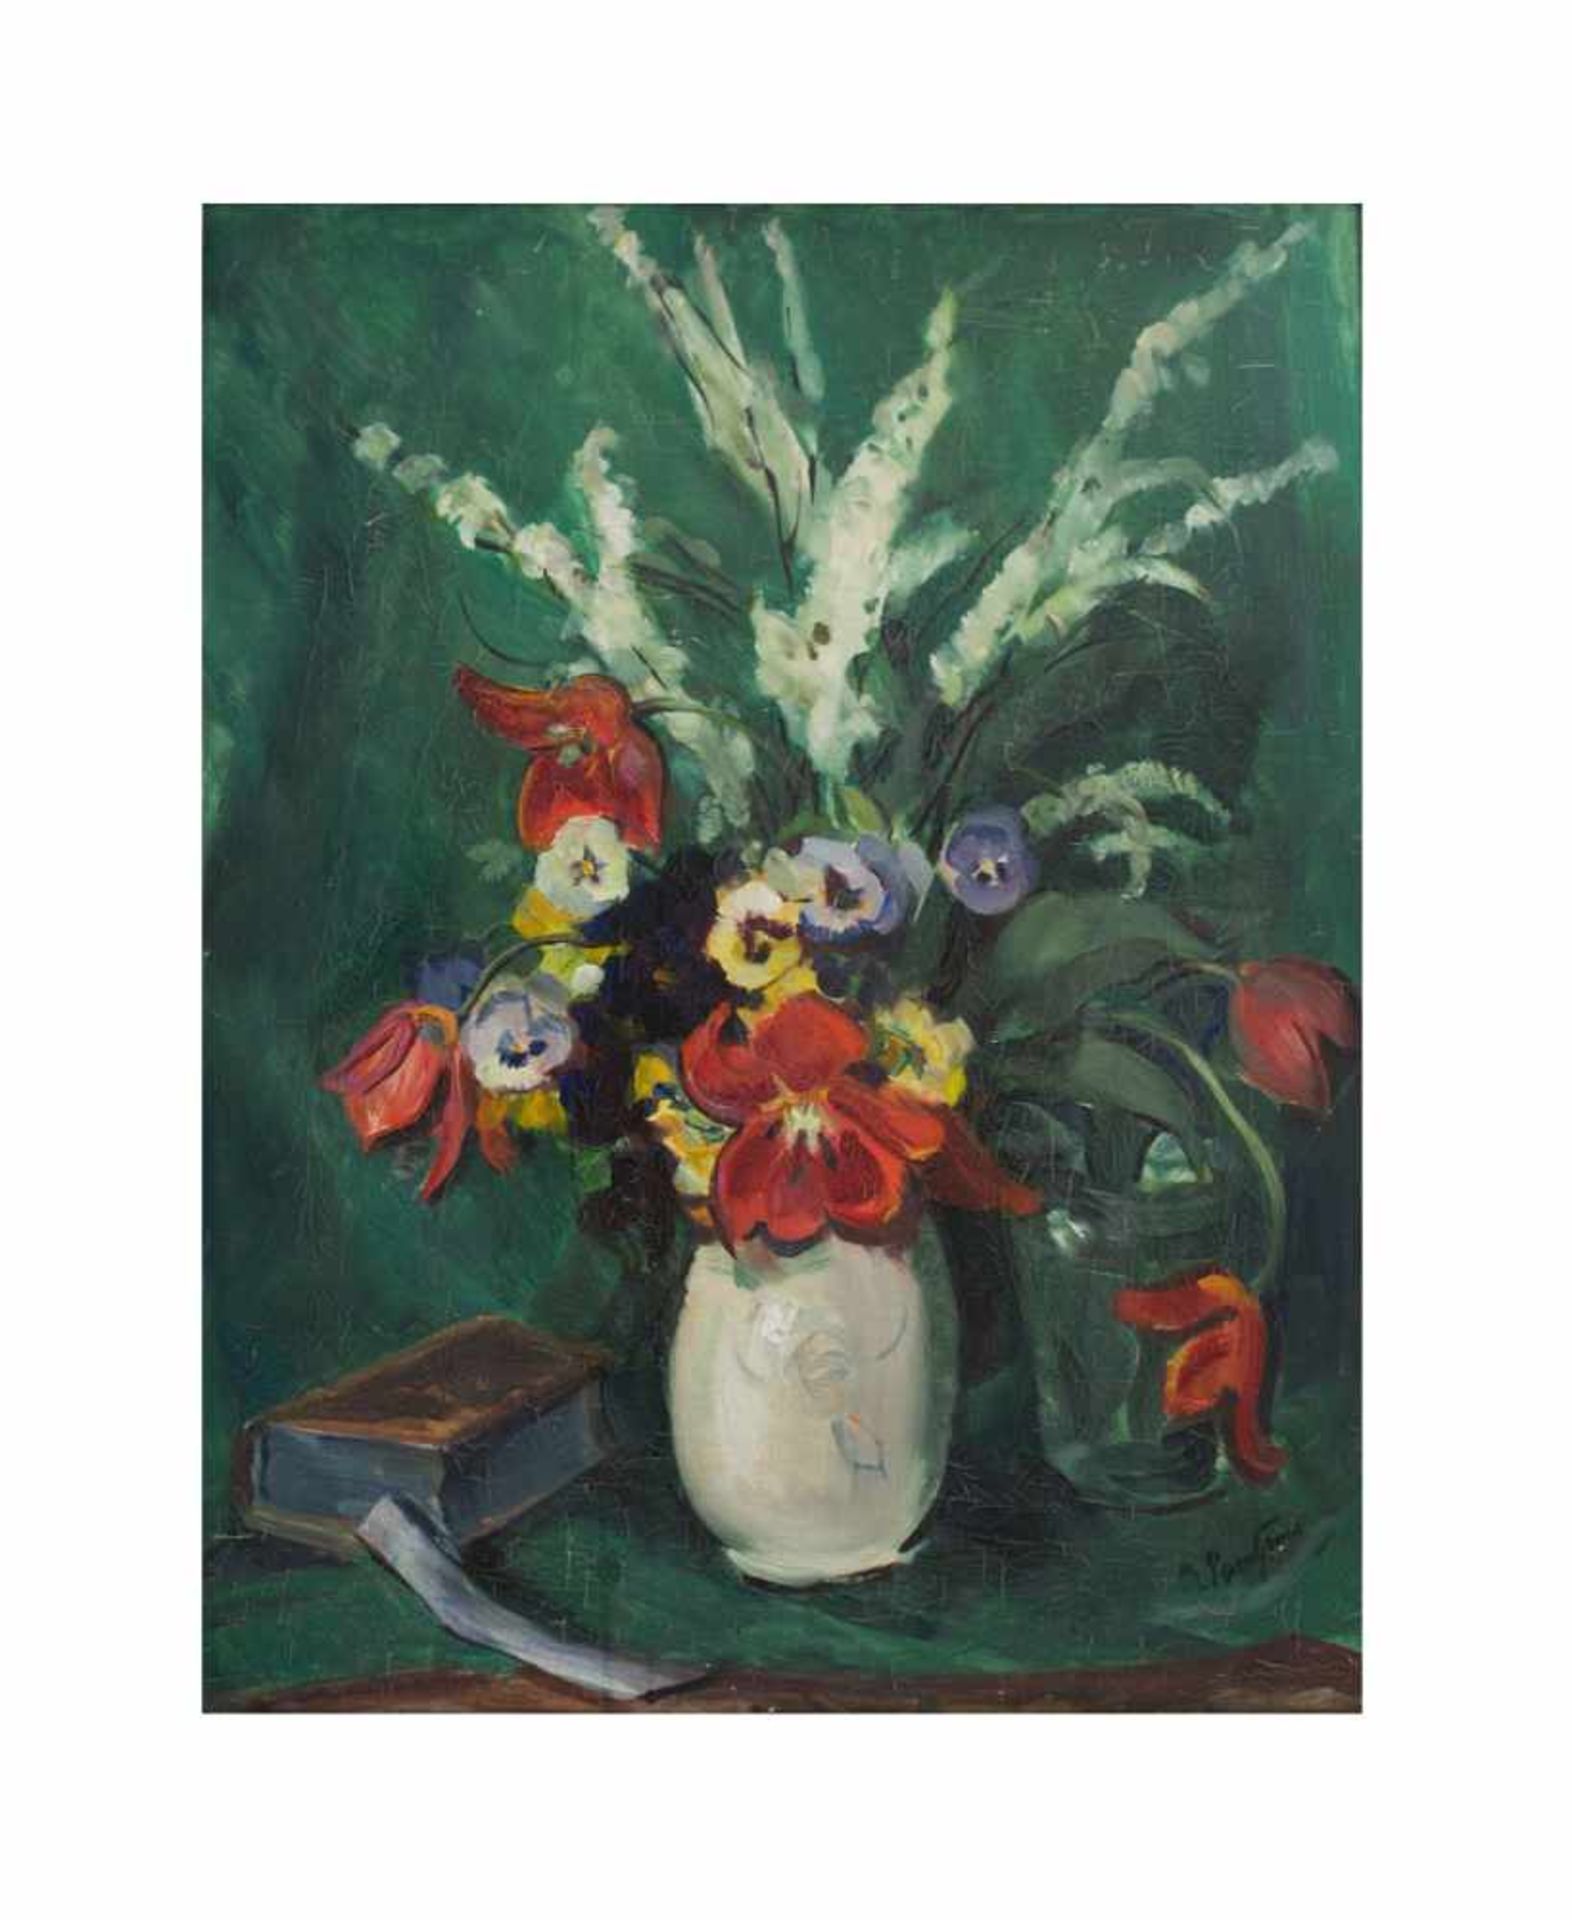 Unbekannter Künstler (20. Jh.)Blumenstillleben, Öl auf Leinwand, 71 cm x 55 cm, unten rechts